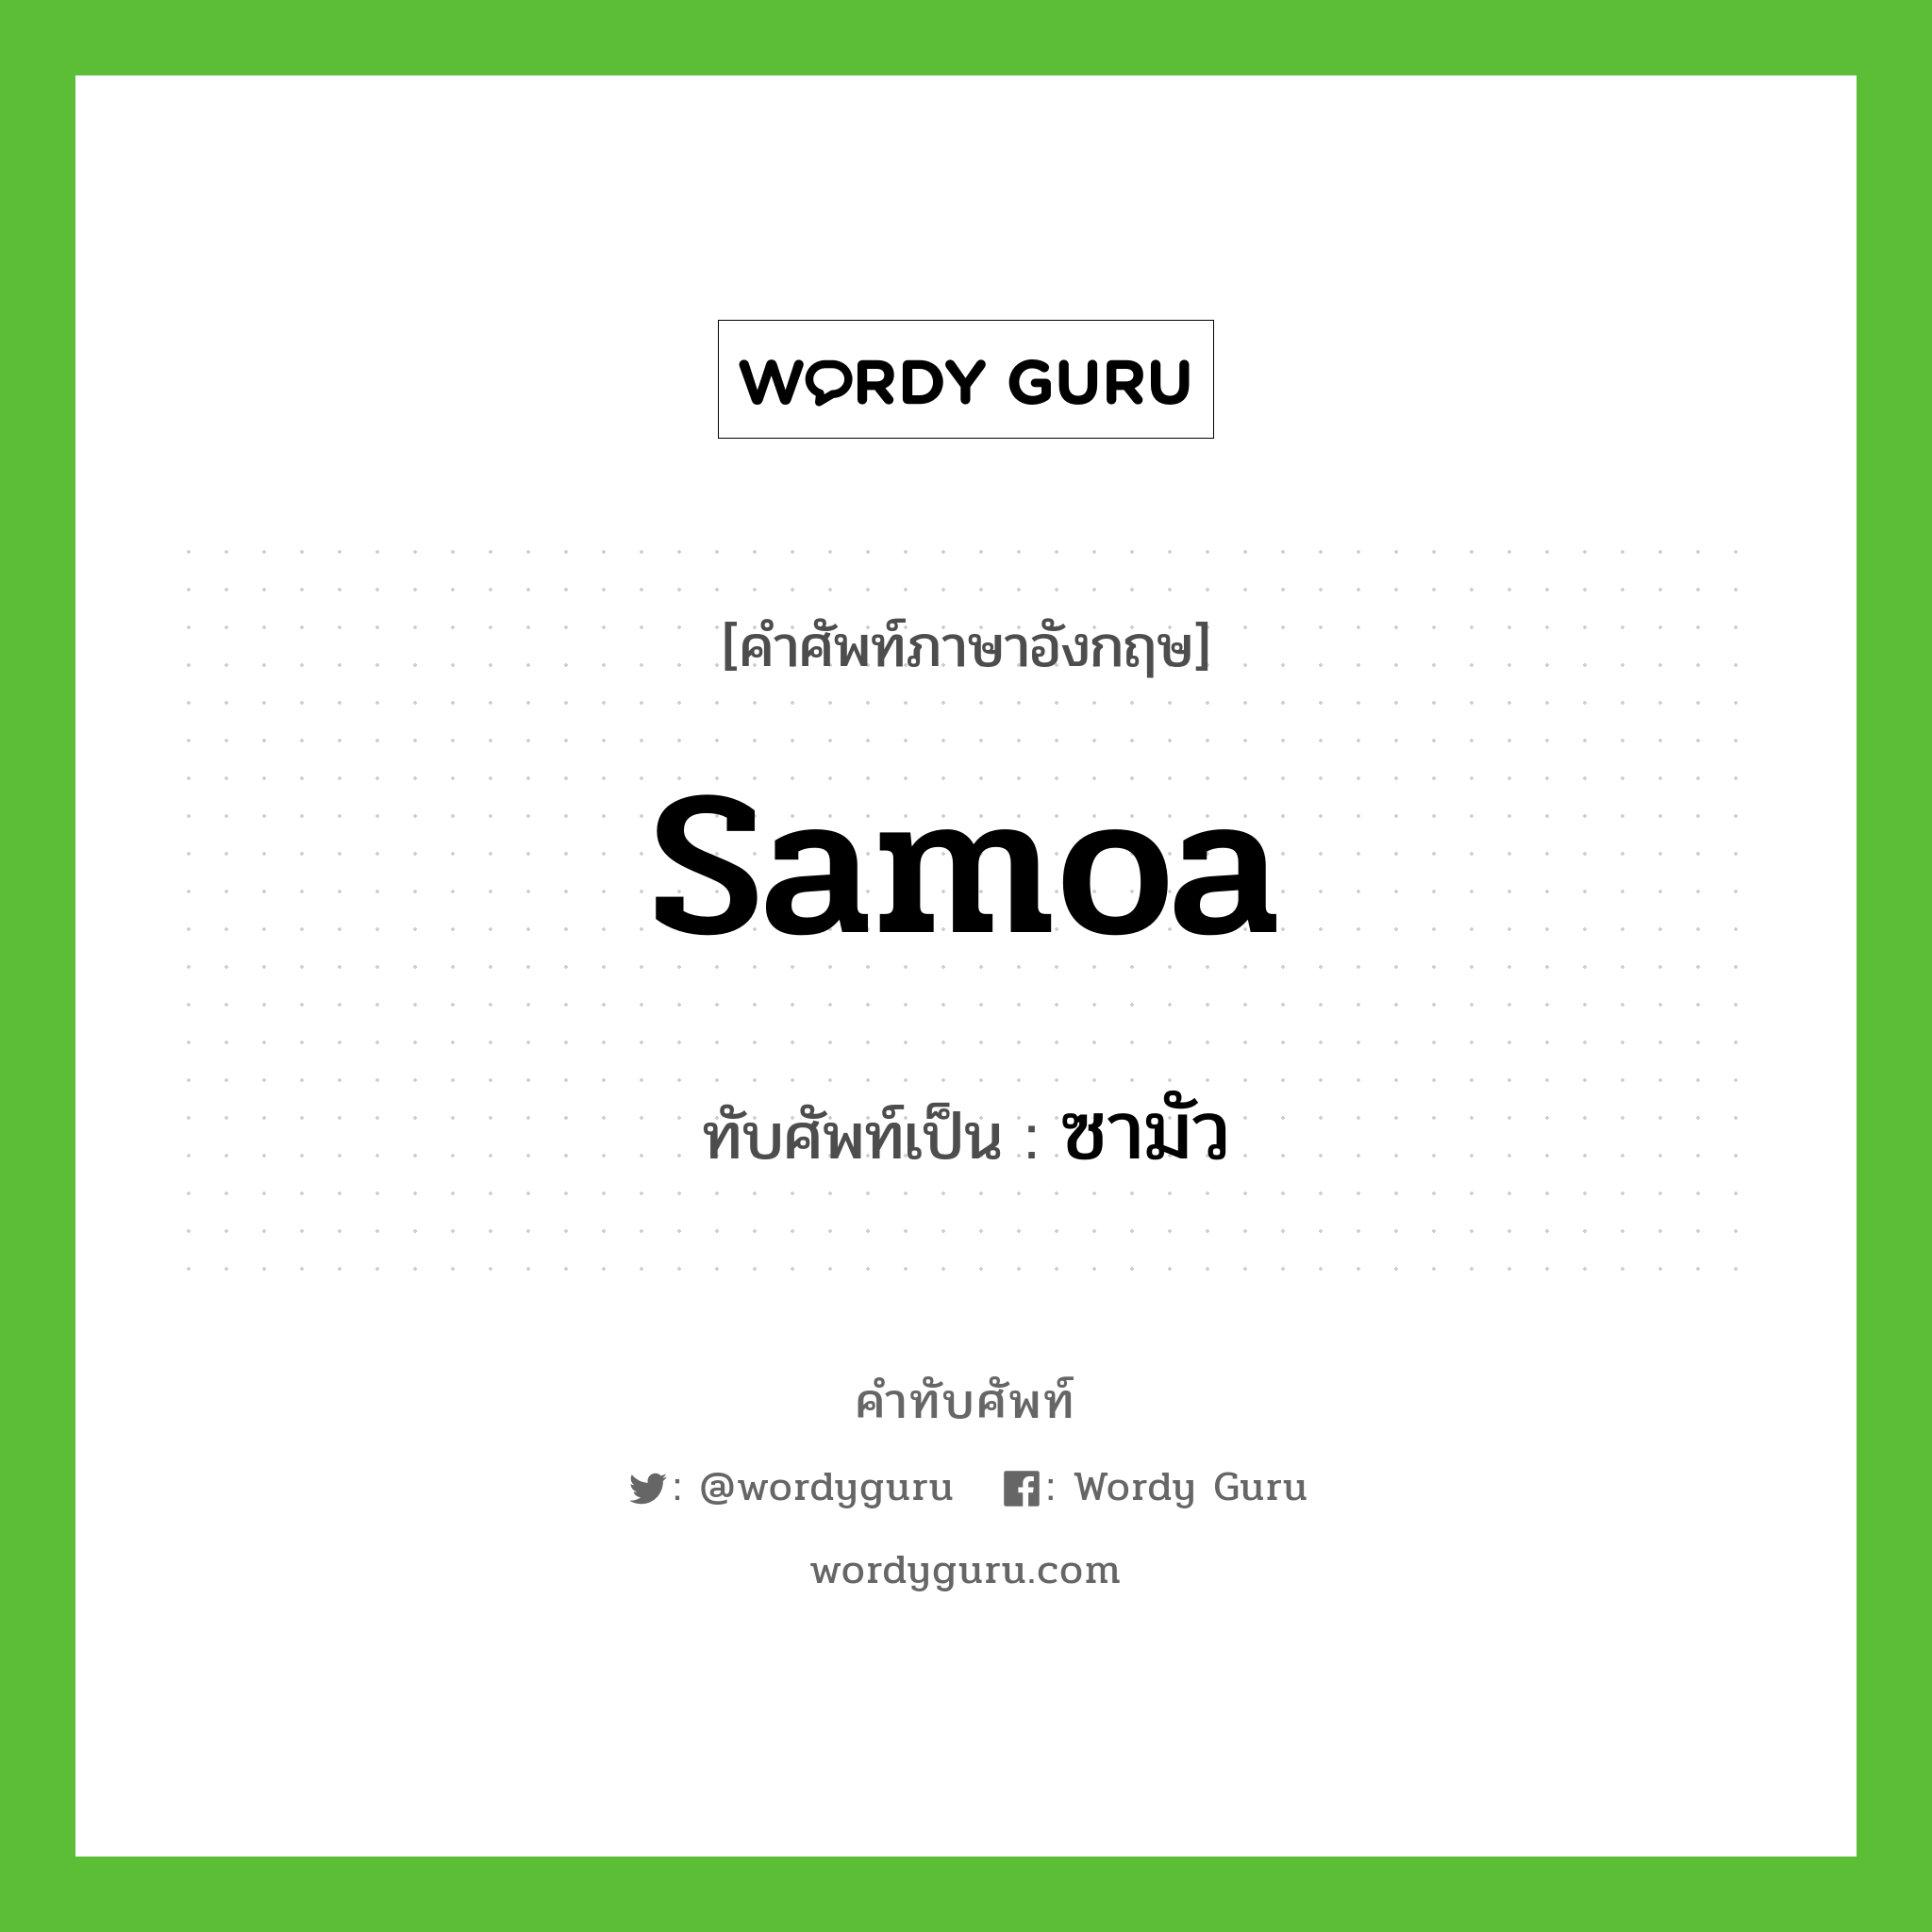 Samoa เขียนเป็นคำไทยว่าอะไร?, คำศัพท์ภาษาอังกฤษ Samoa ทับศัพท์เป็น ซามัว